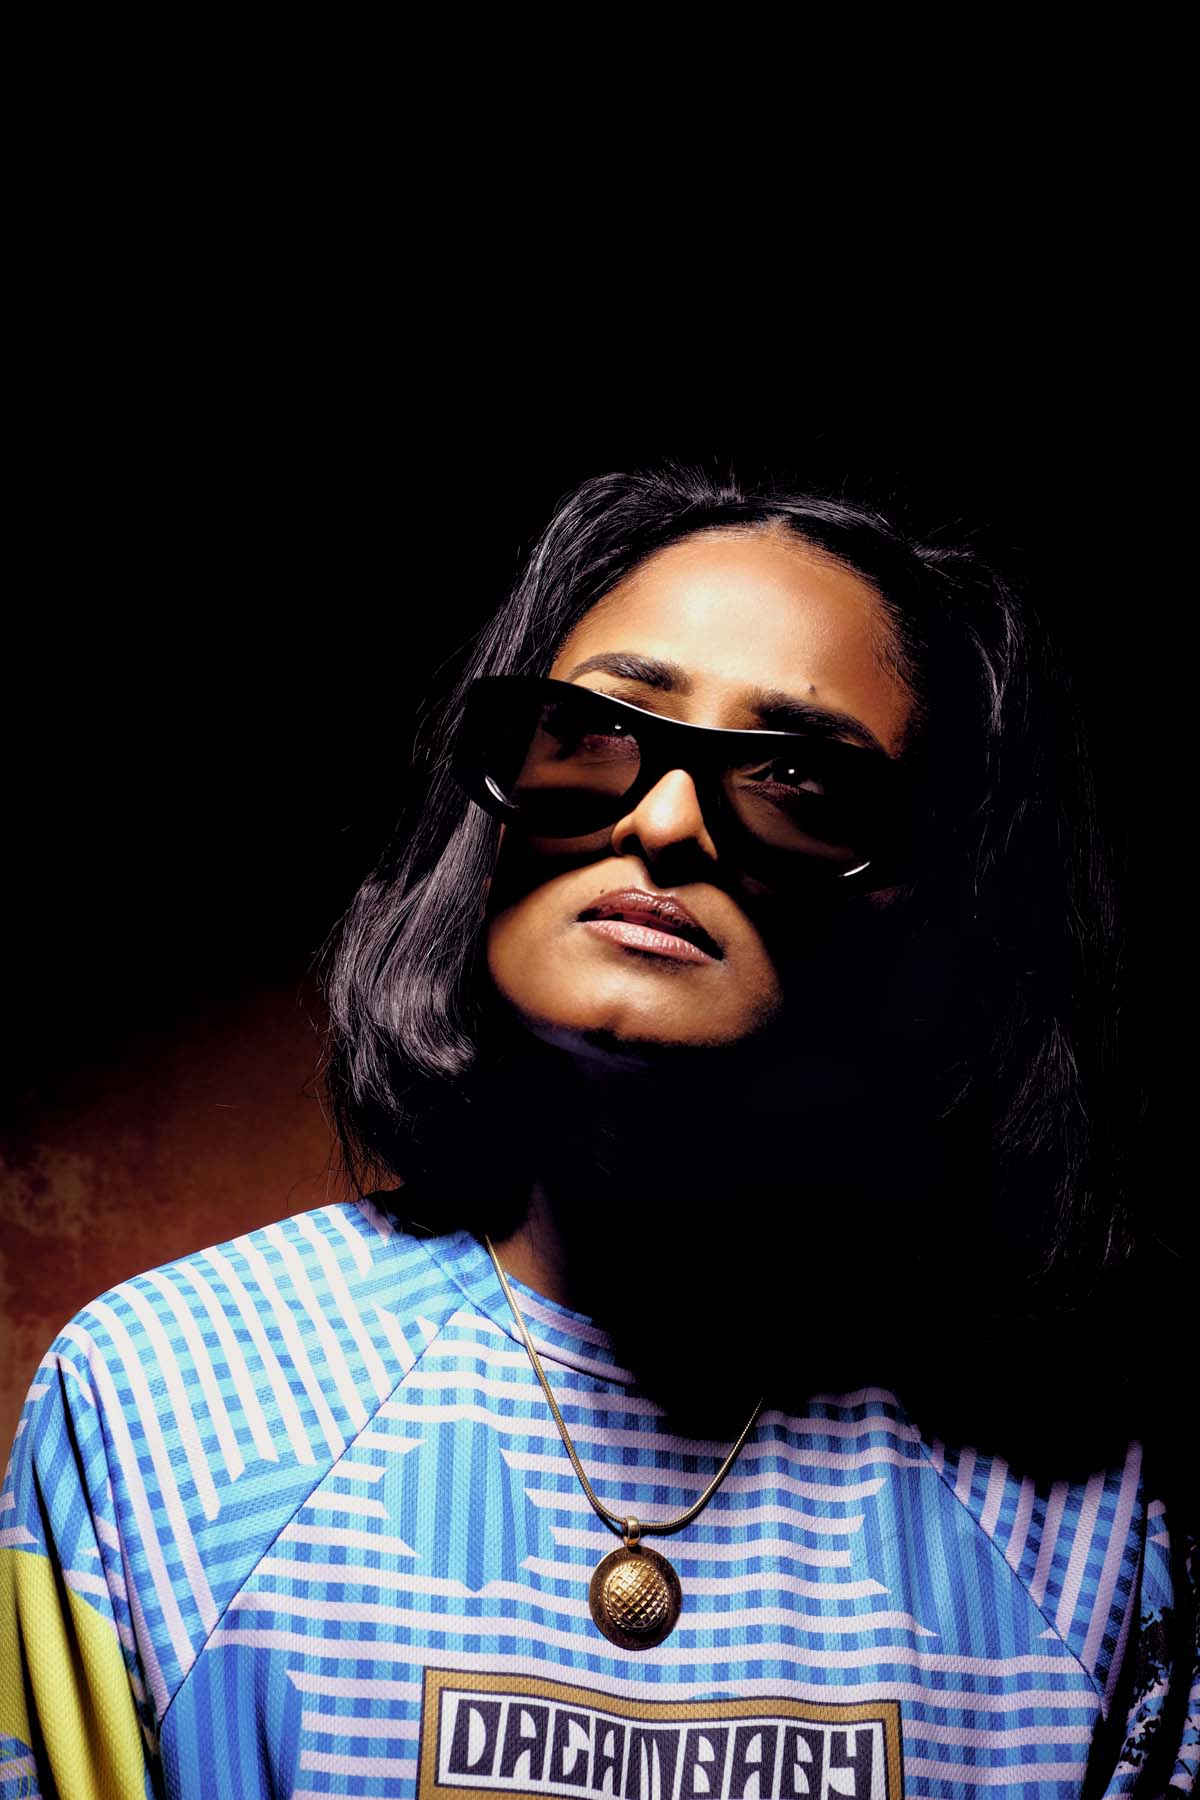 Eine Frau mit schwarzen schulterlangen Haaren ist zu sehen. Priya Ragu trägt eine Sonnenbrille, durch deren Gläser die Augen erkennbar sind. Sie wird von oben angeleuchtet, der Hintergrund ist dunkel. Sie schaut nach oben, trägt ein buntes Shirt mit der Aufschrift "Dreambaby" und eine goldene Kette mit rundem Anhänger.